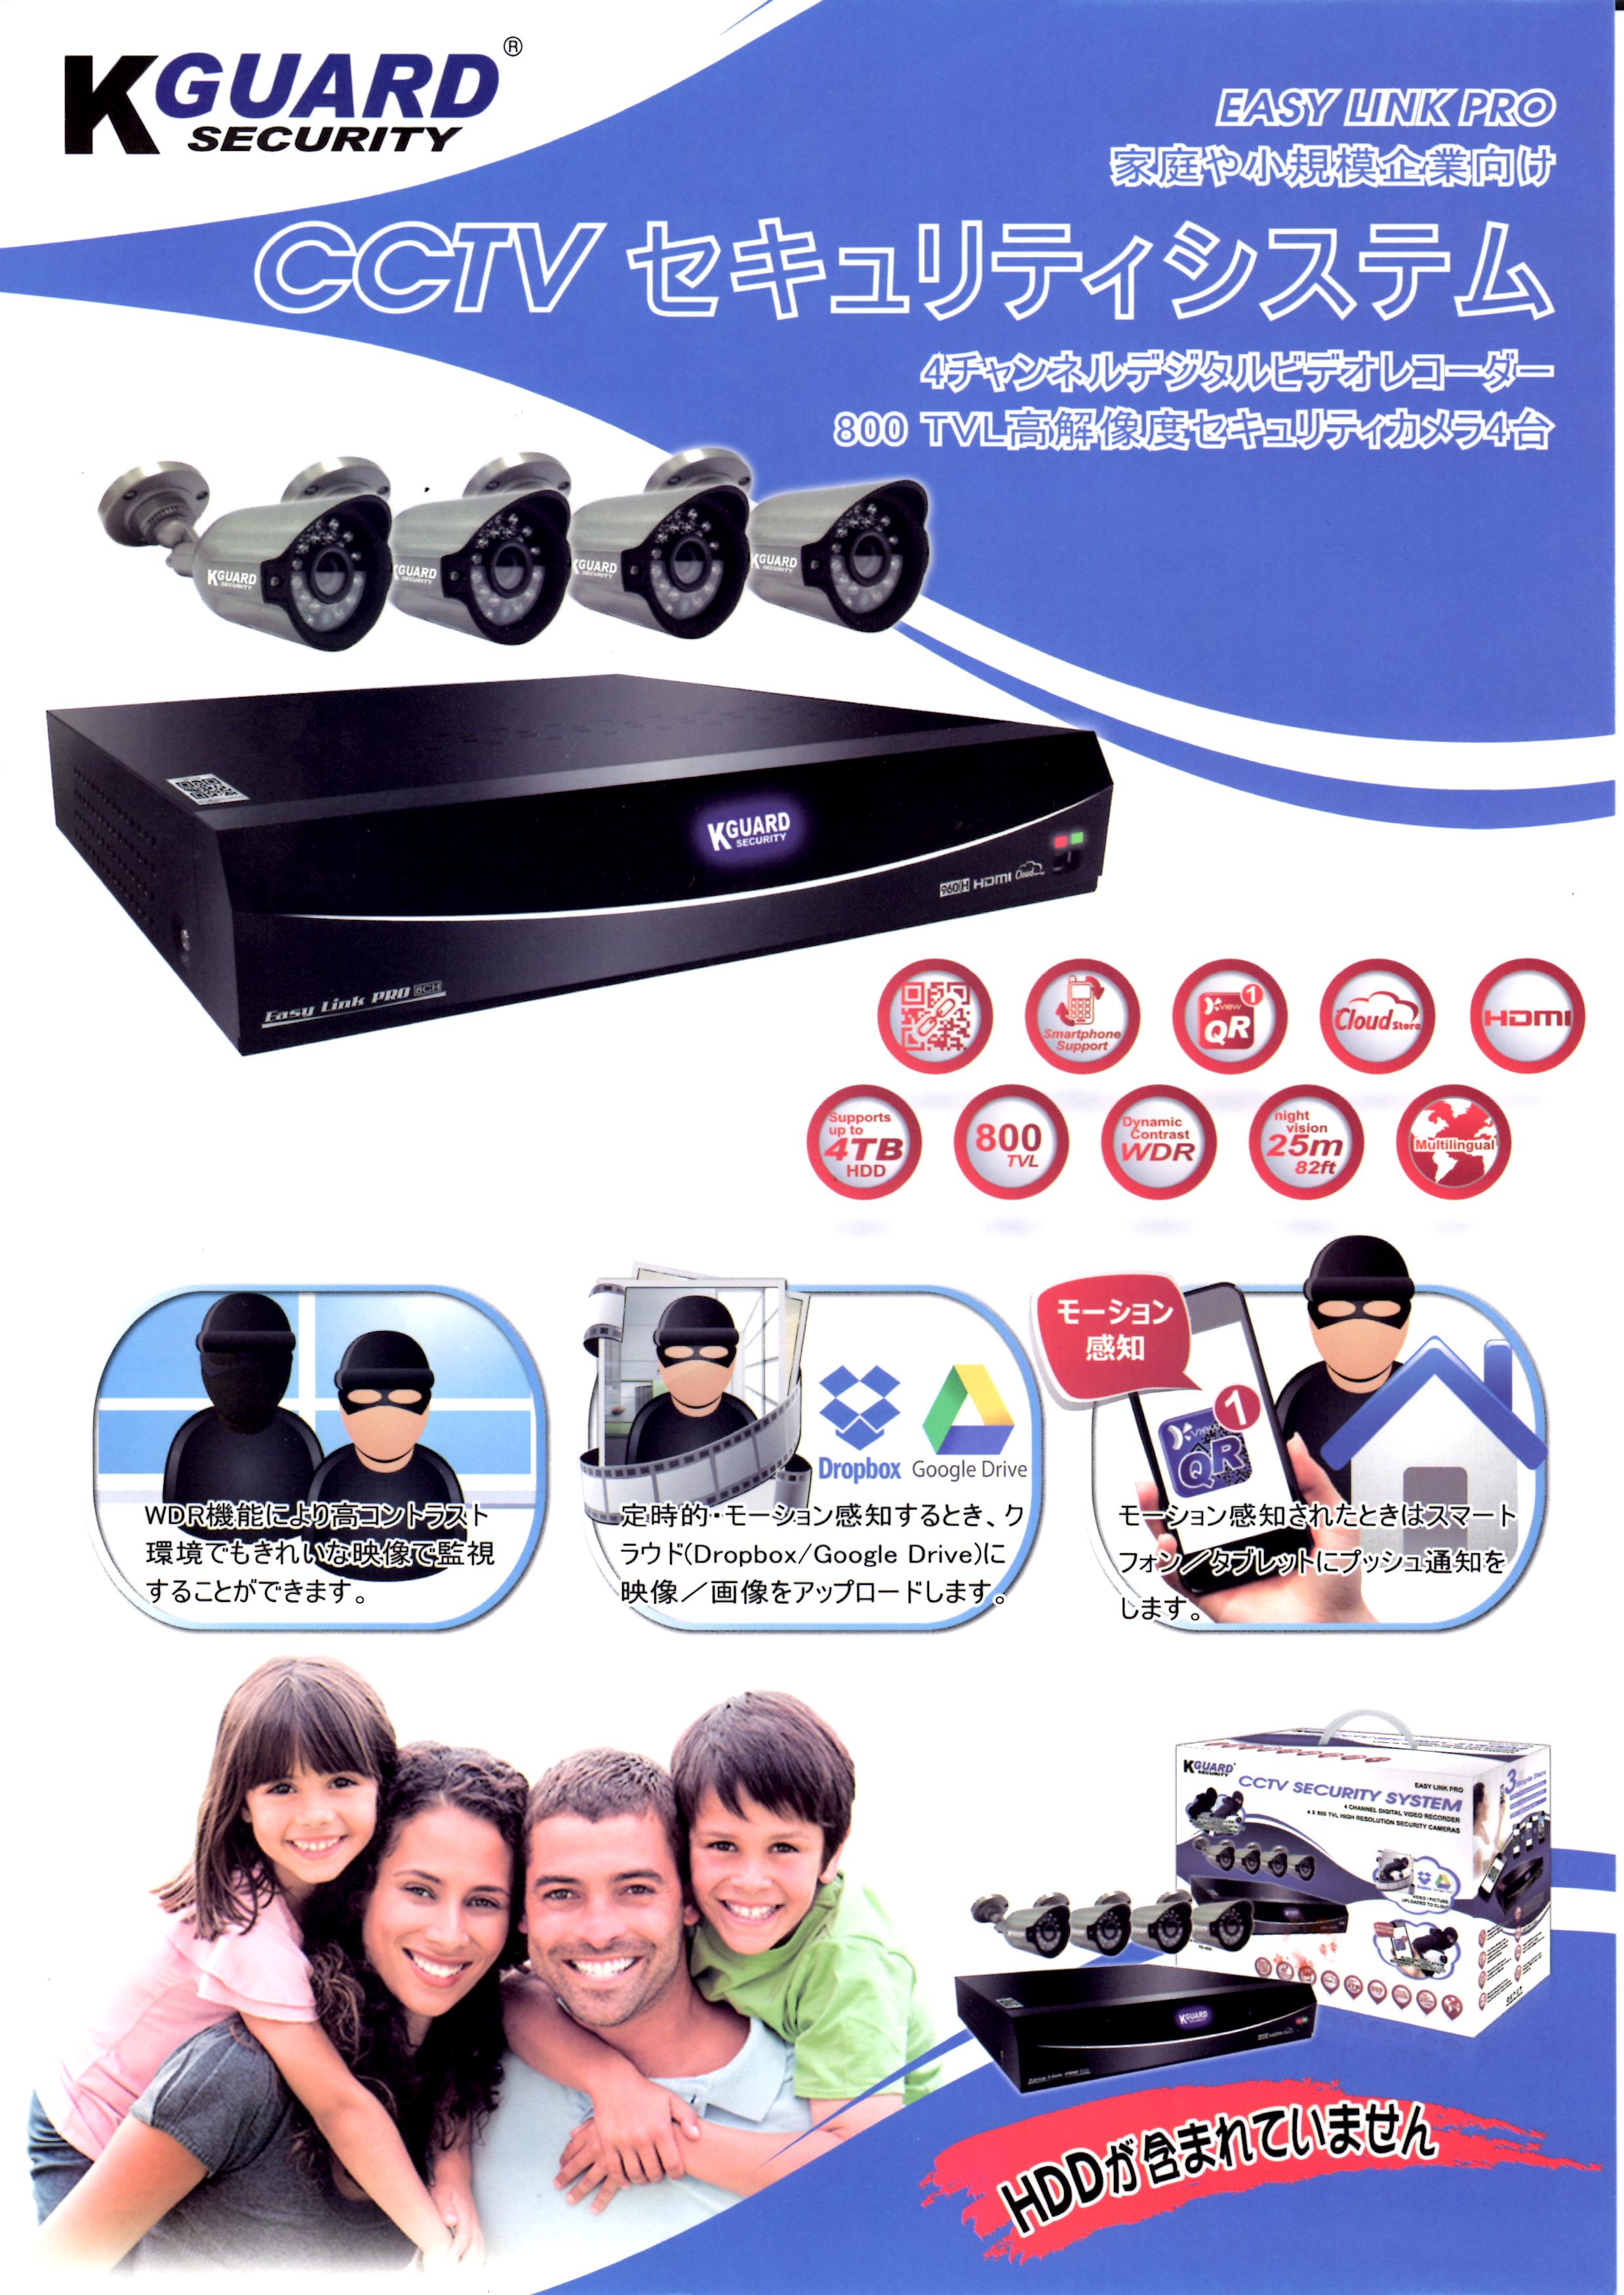 品質が完璧 fmz様専用 KGUARD SECURITY CCTVセキュリティシステム 